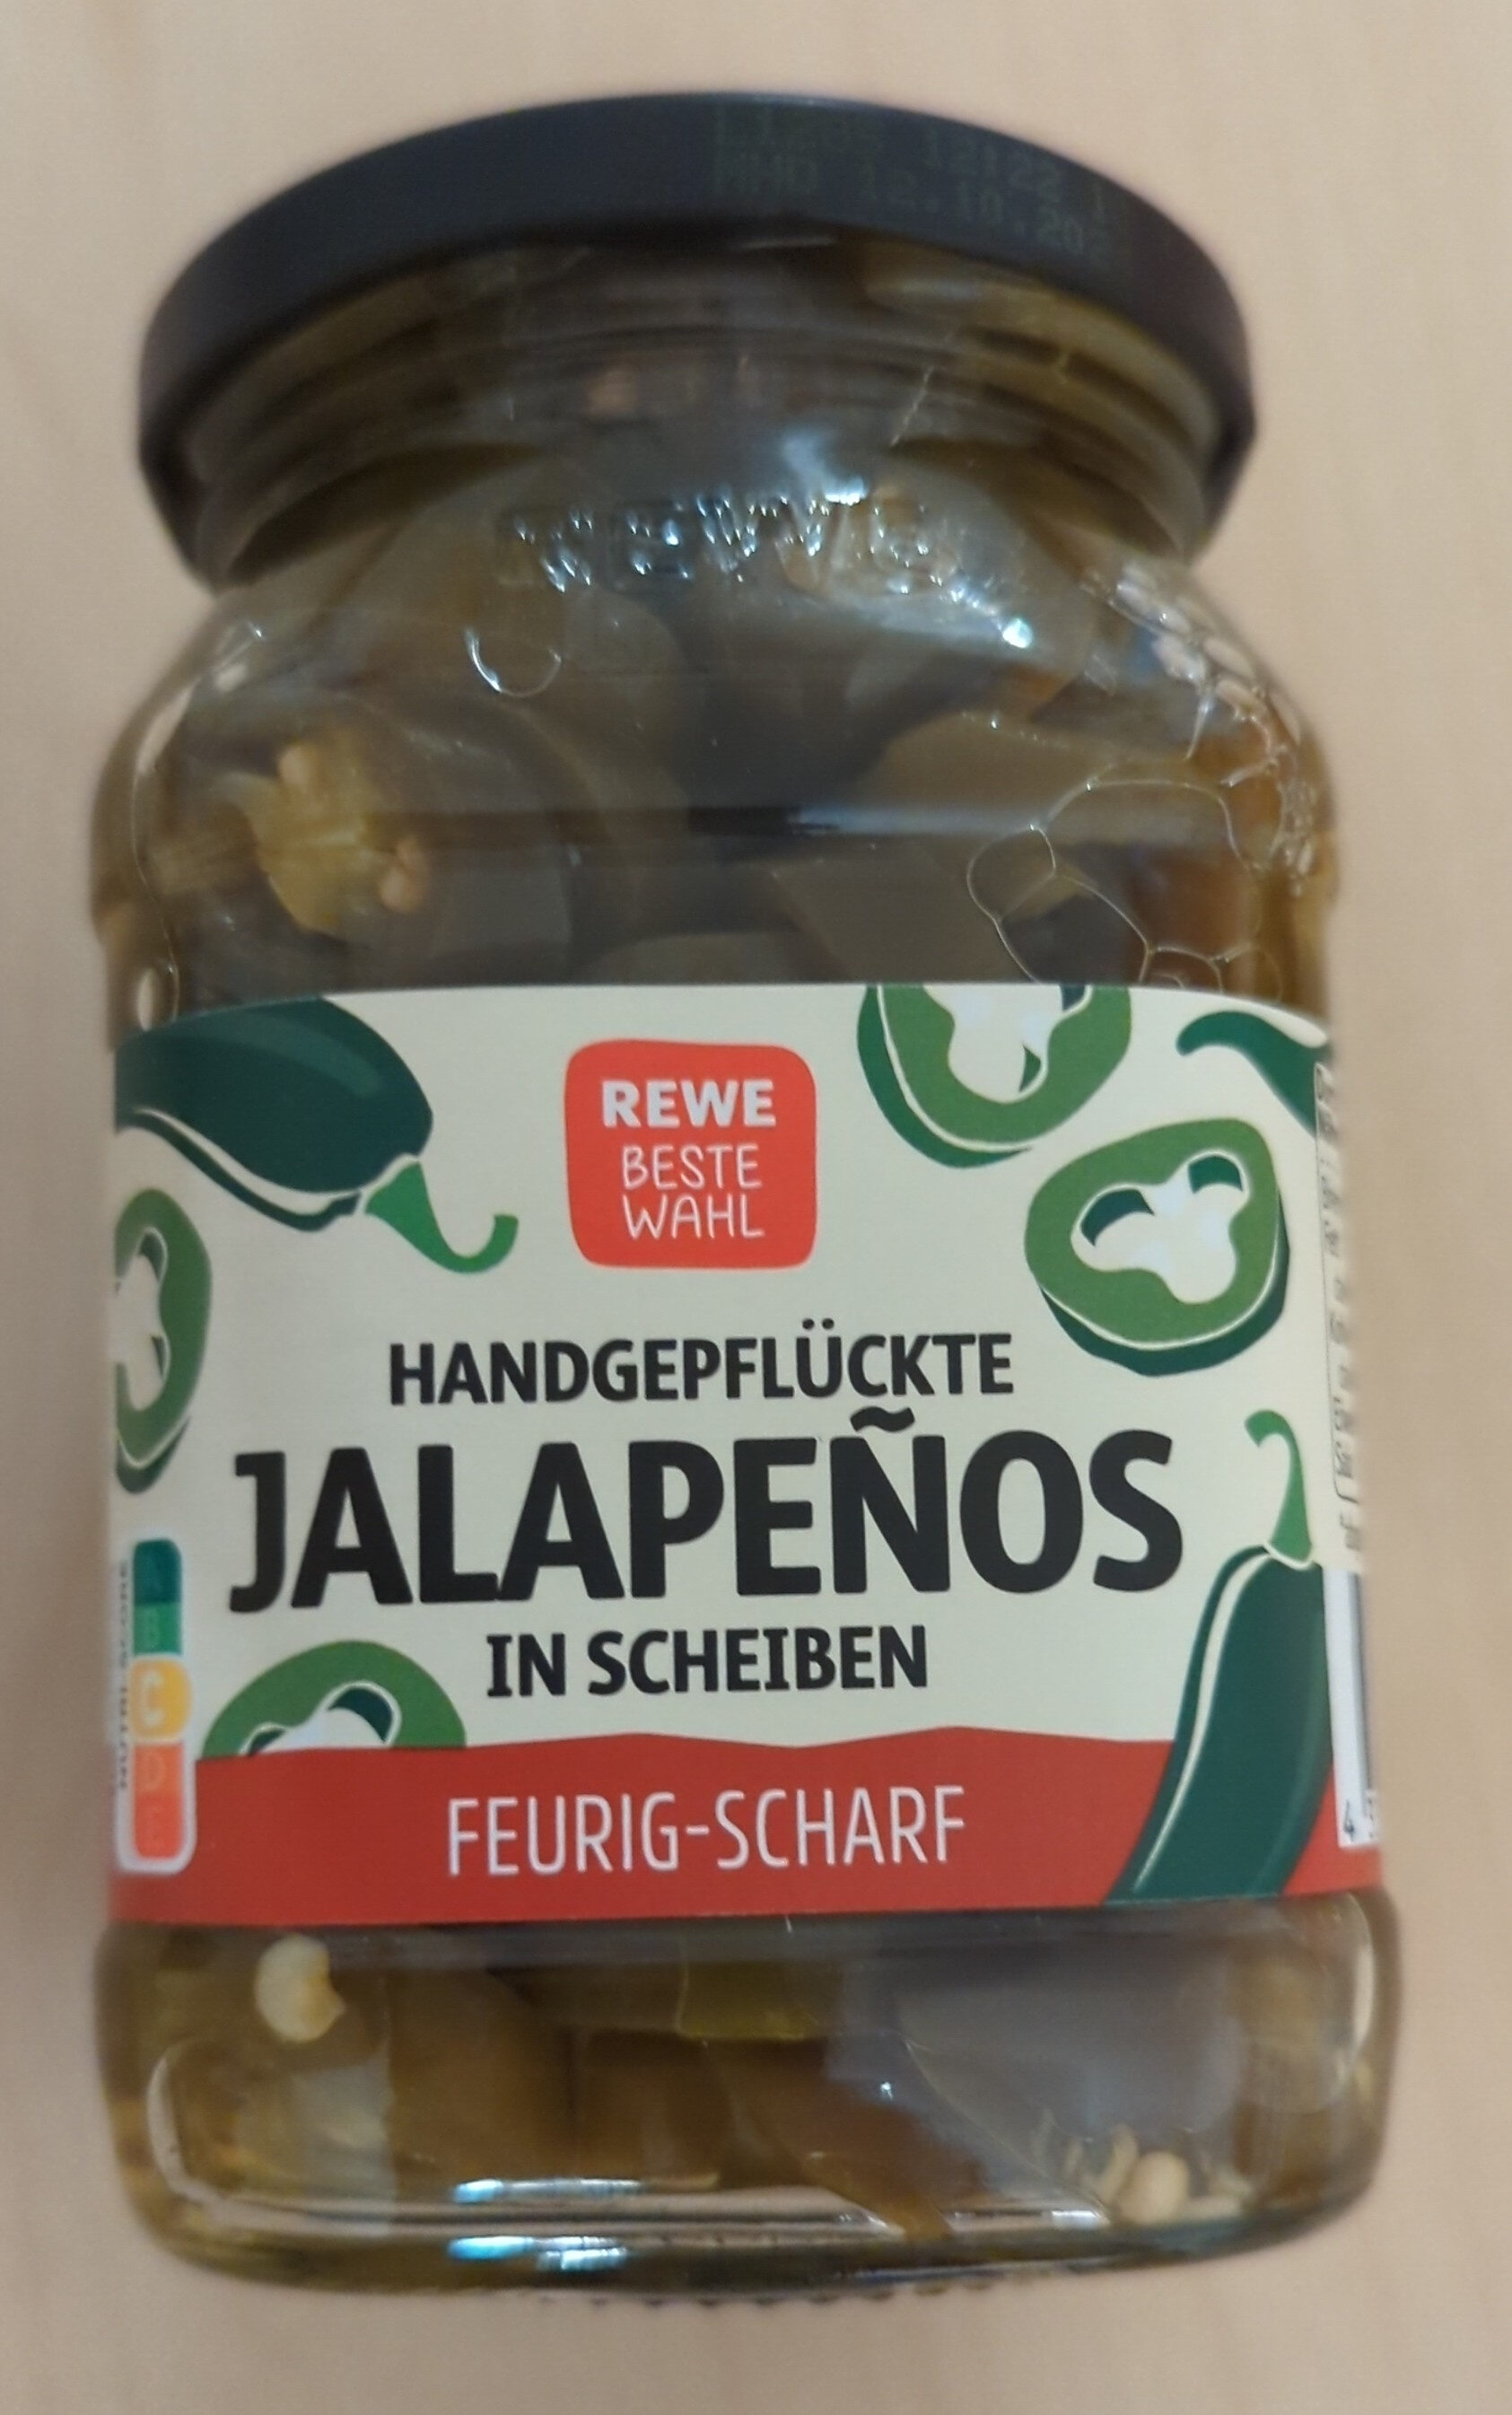 Jalapenos Gemuese in Scheiben - Product - de